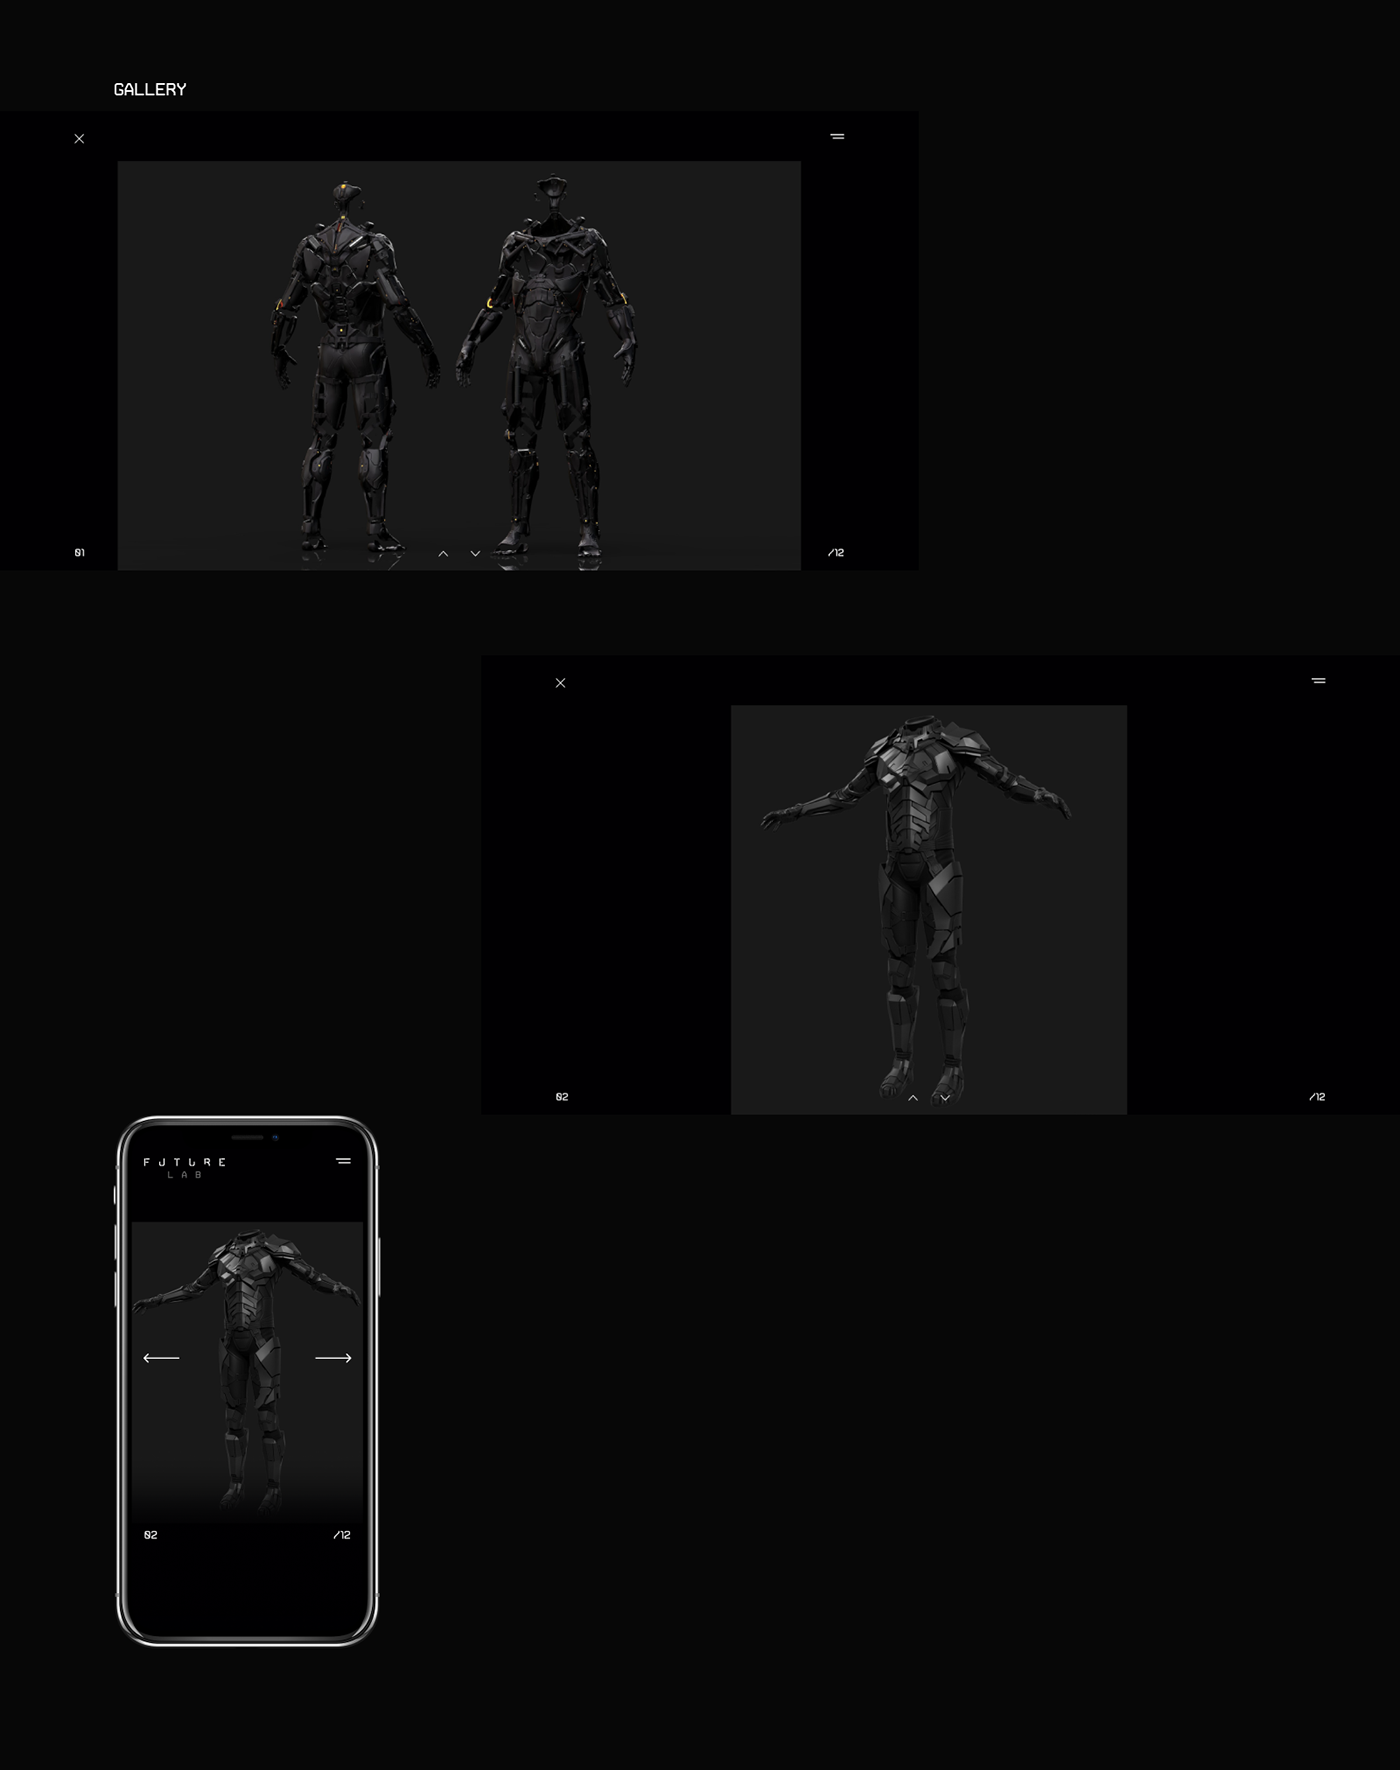 Bionic concept cyber exoskeleton future Minimalism robots UI ux Webdesign